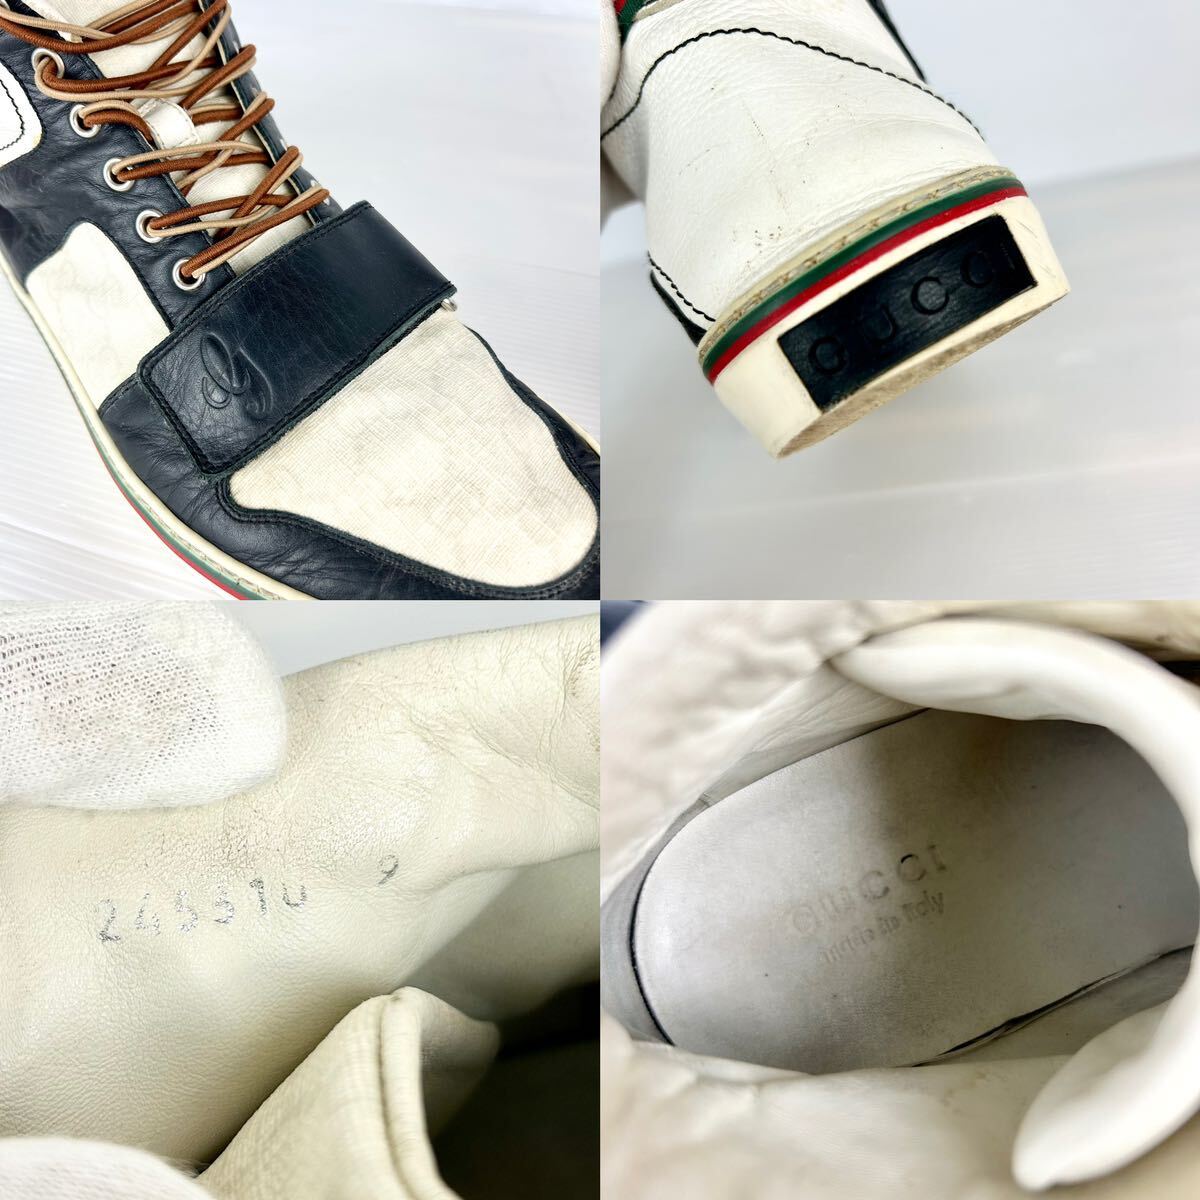 1 иен [ первоклассный товар ] GUCCI Gucci [ подавляющий ощущение роскоши ] мужской спортивные туфли - ikatto обувь PVC GGs шкив m Sherry линия темно-синий 28.0cm соответствует 